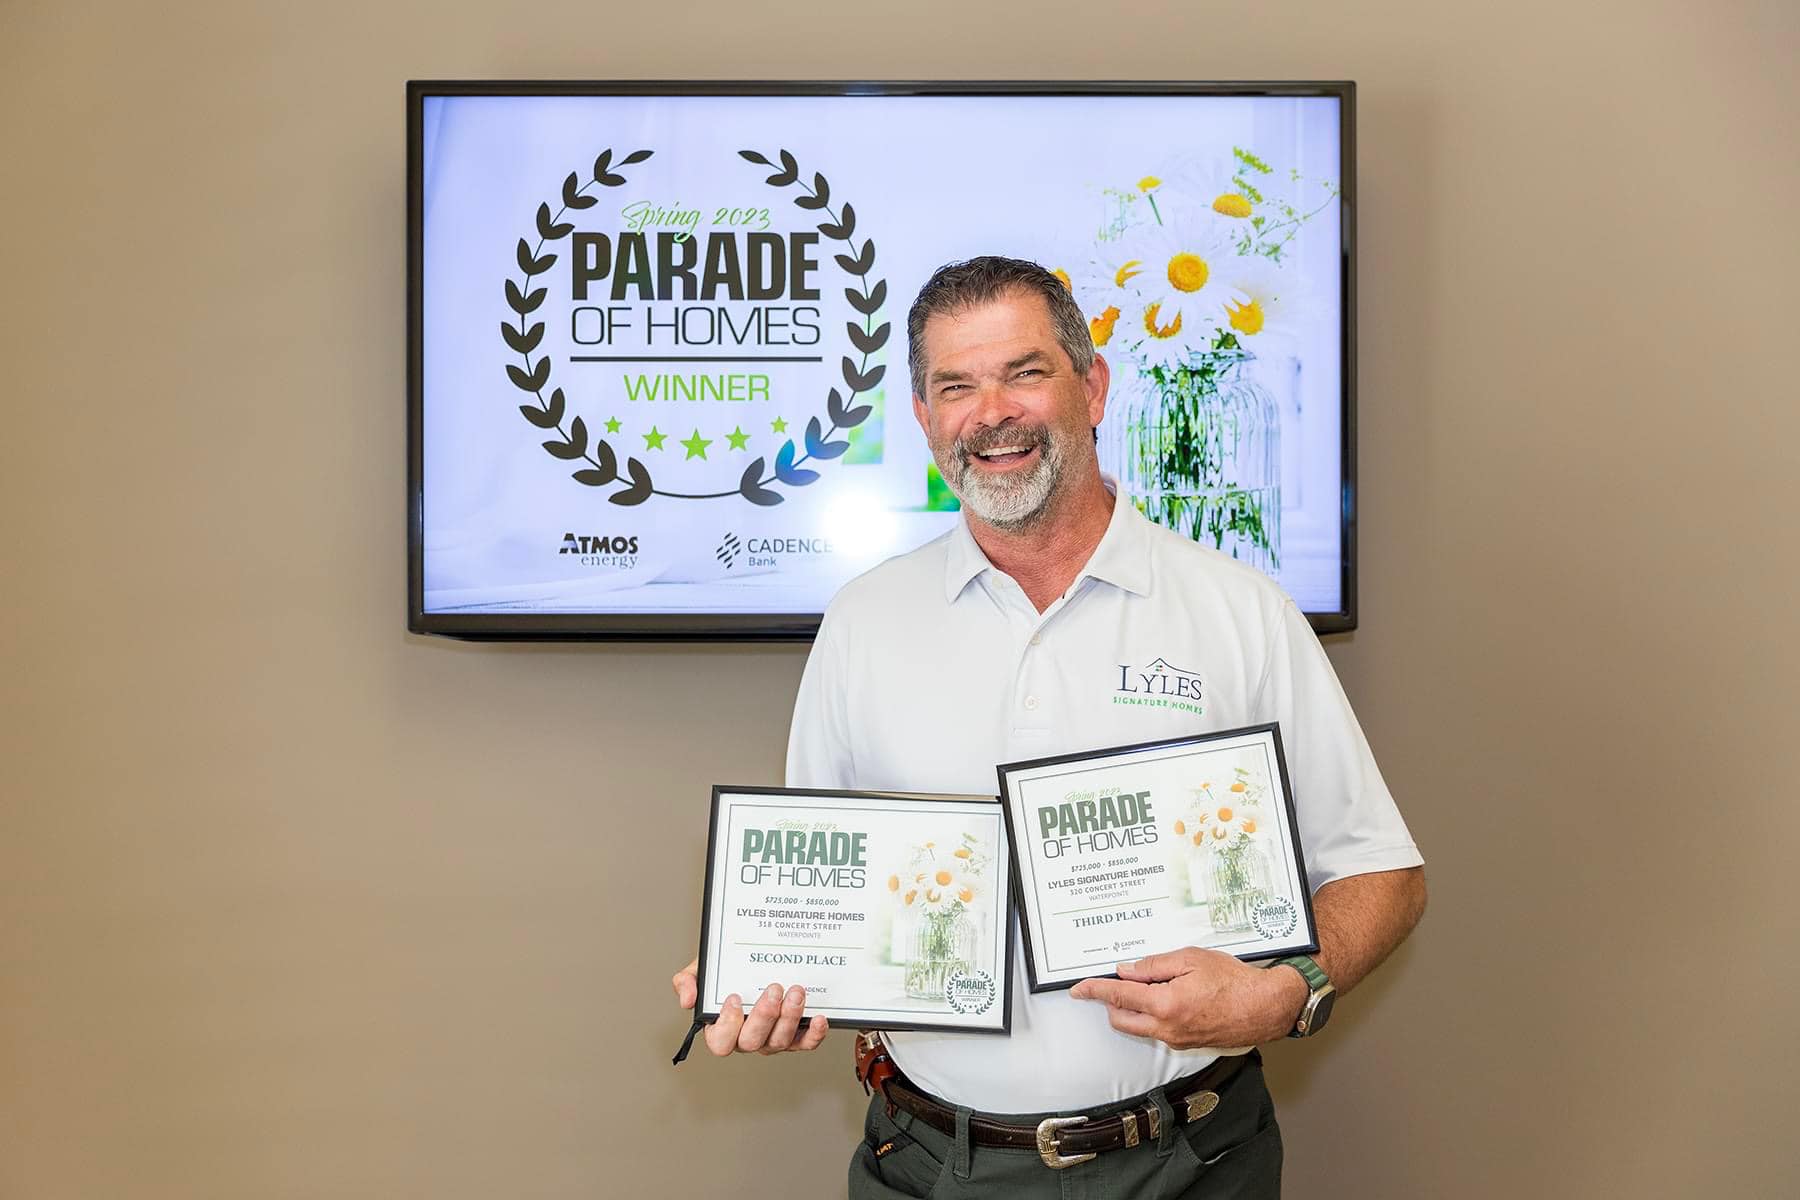 Parade of Homes award